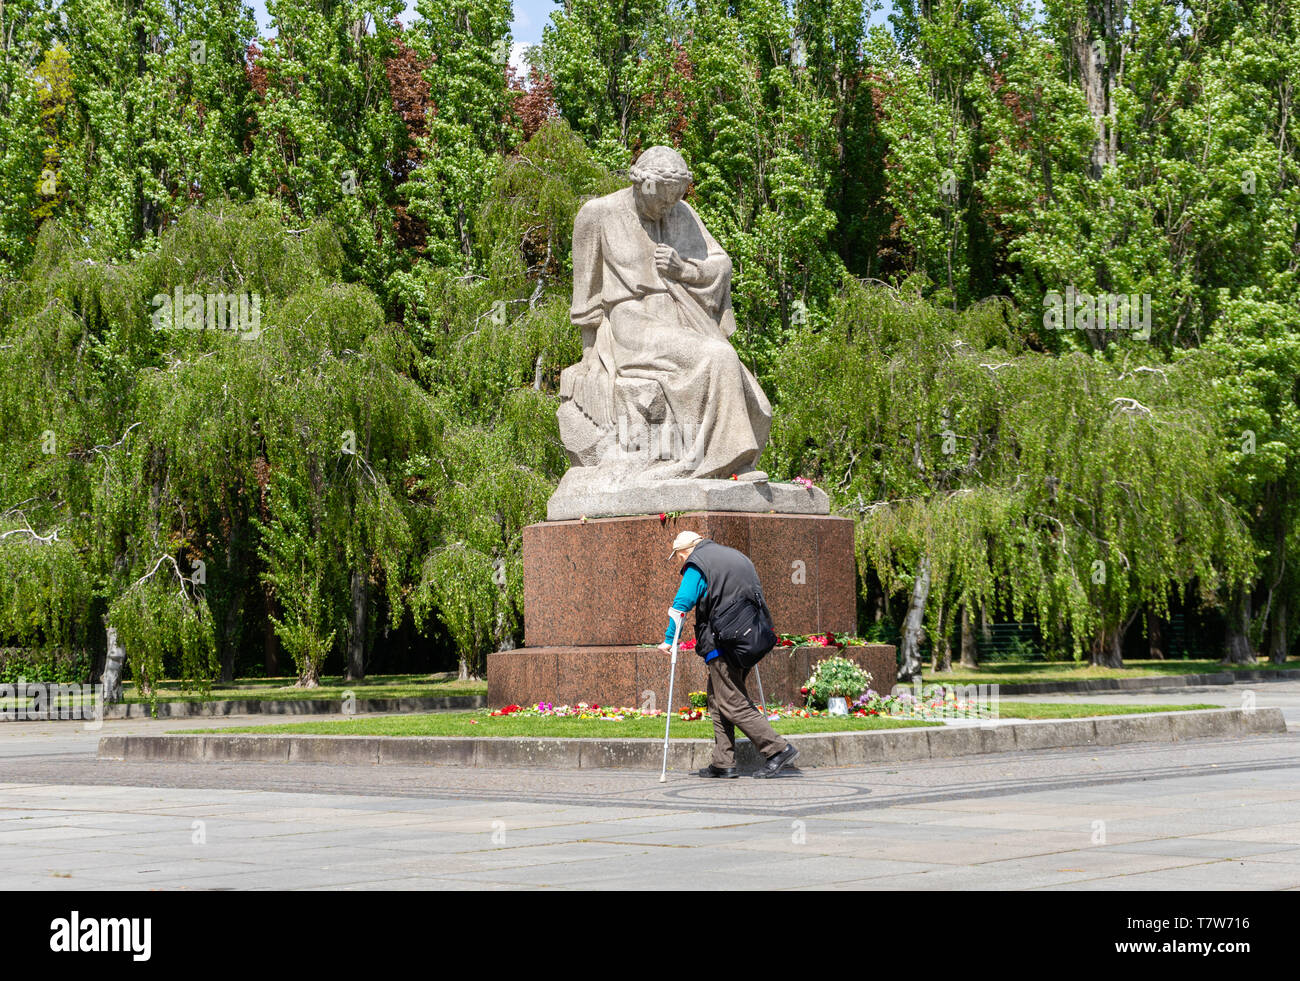 Il pianto patria statua alla guerra sovietica Memorial (Sowjetisches Ehrenmal) in memoria dei caduti soldati sovietici, Berlin Treptow, Germania Foto Stock